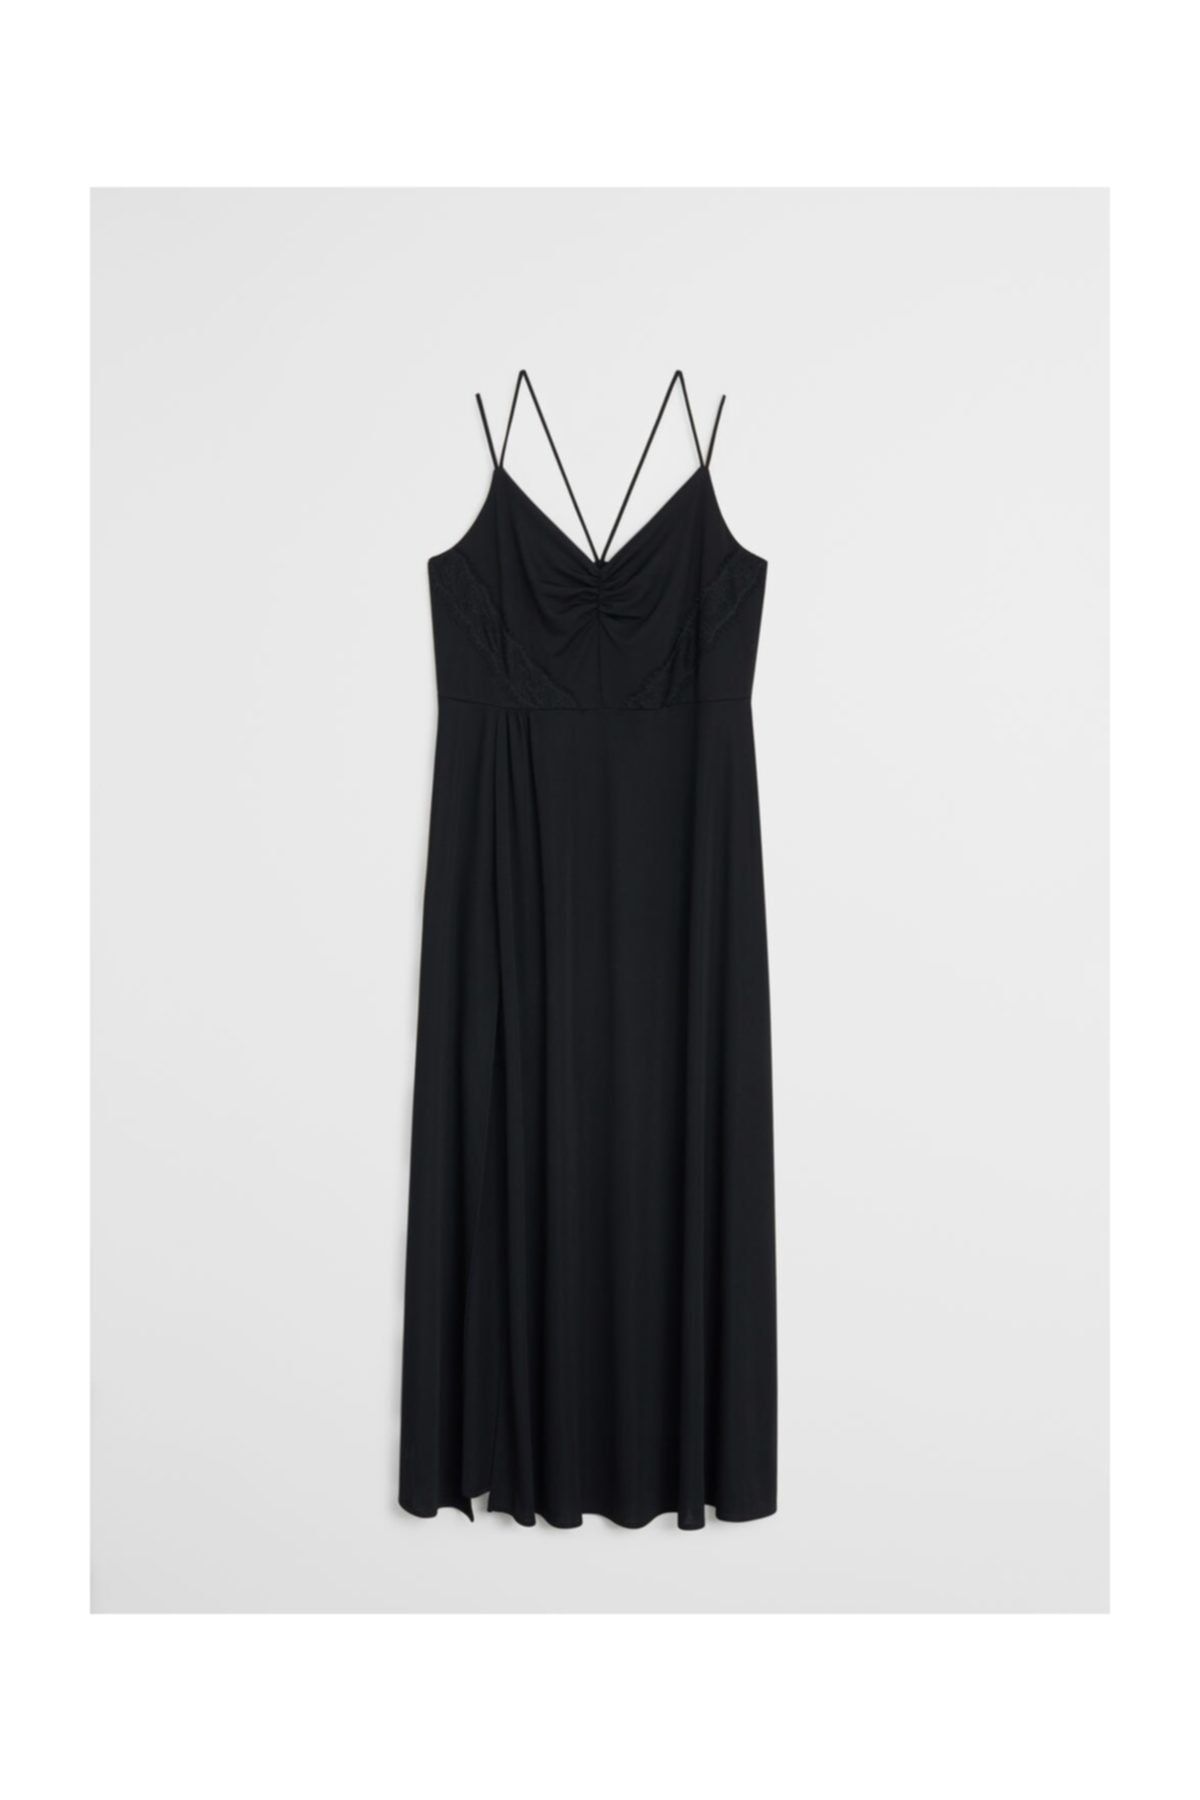 Violeta by MANGO Kadın Siyah Dantel Detaylı Elbise 67075970